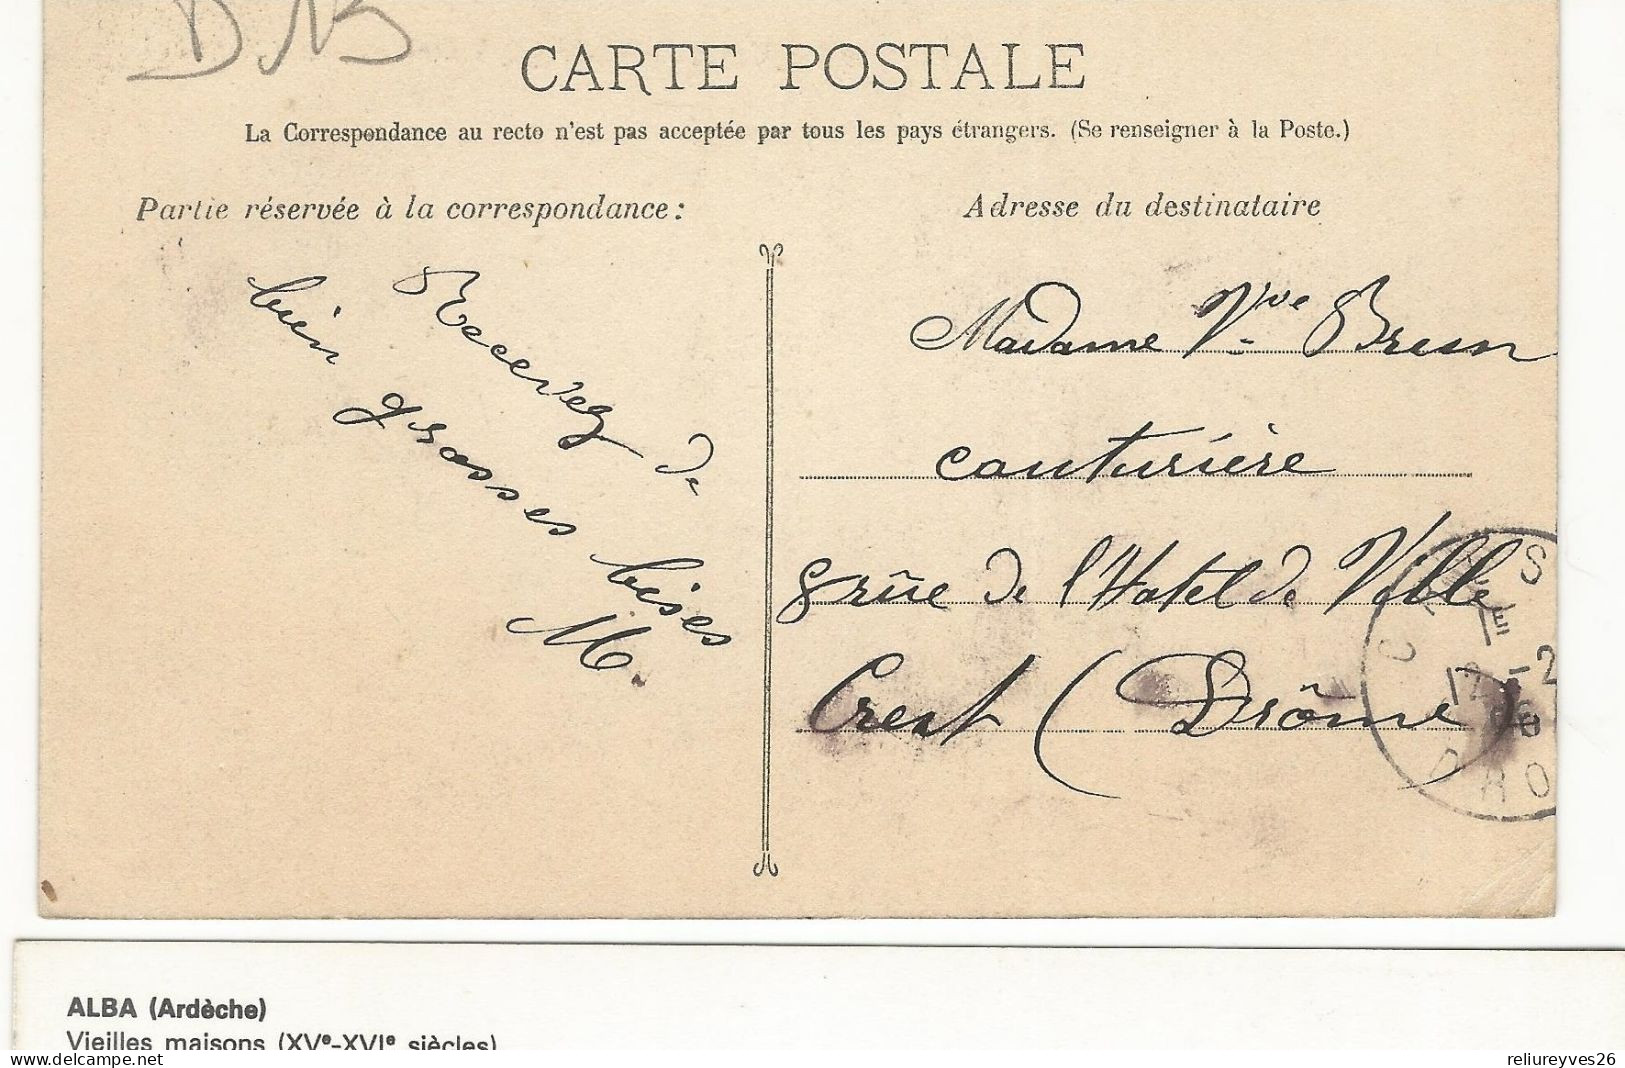 CPA, D.13 ,N°95, Marseille, La Gare St. Charles ( Arrivée ) Animée  Ed. Guende . 1906 - Station Area, Belle De Mai, Plombières